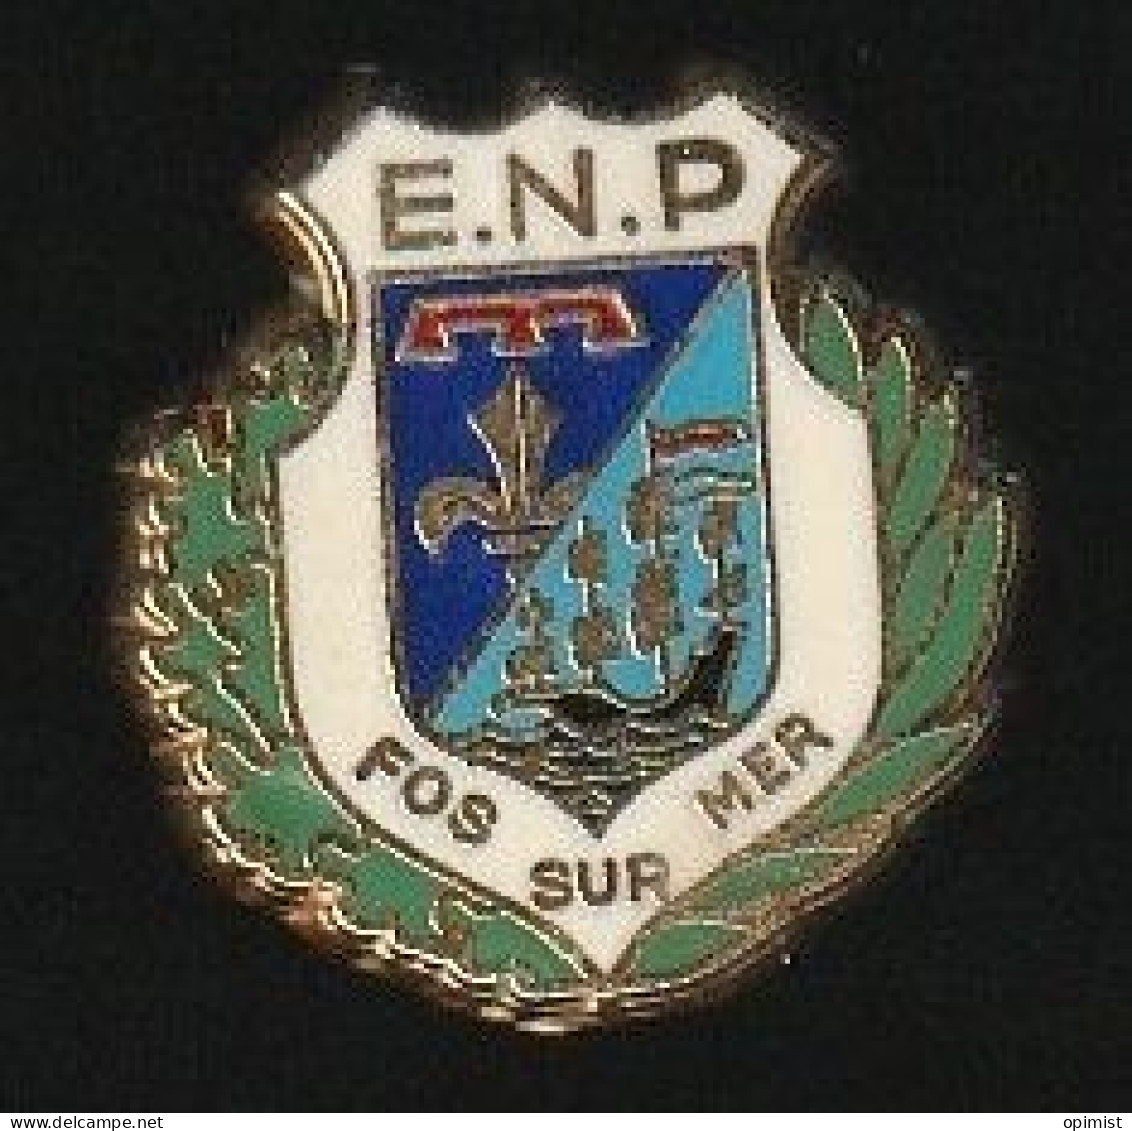 77659-Pin's .Ecole Nationale De Police De FOS Sur Mer. Sygné Y.D. - Polizei